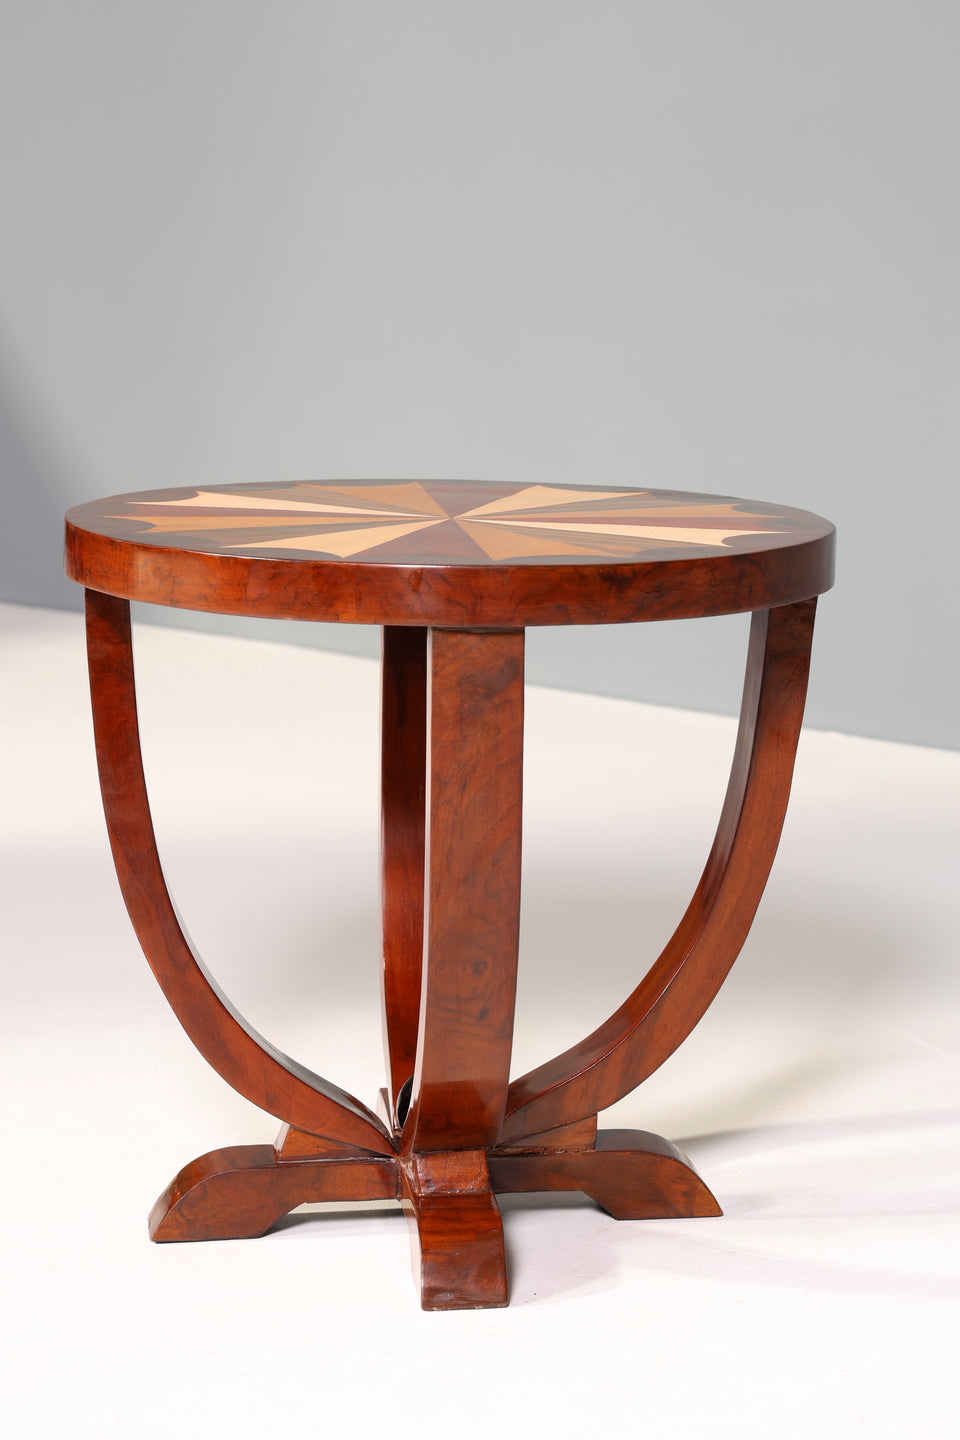 Stilvoller Art Deco Design Tisch Luxus Couchtisch Beistelltisch bunter Ablagetisch